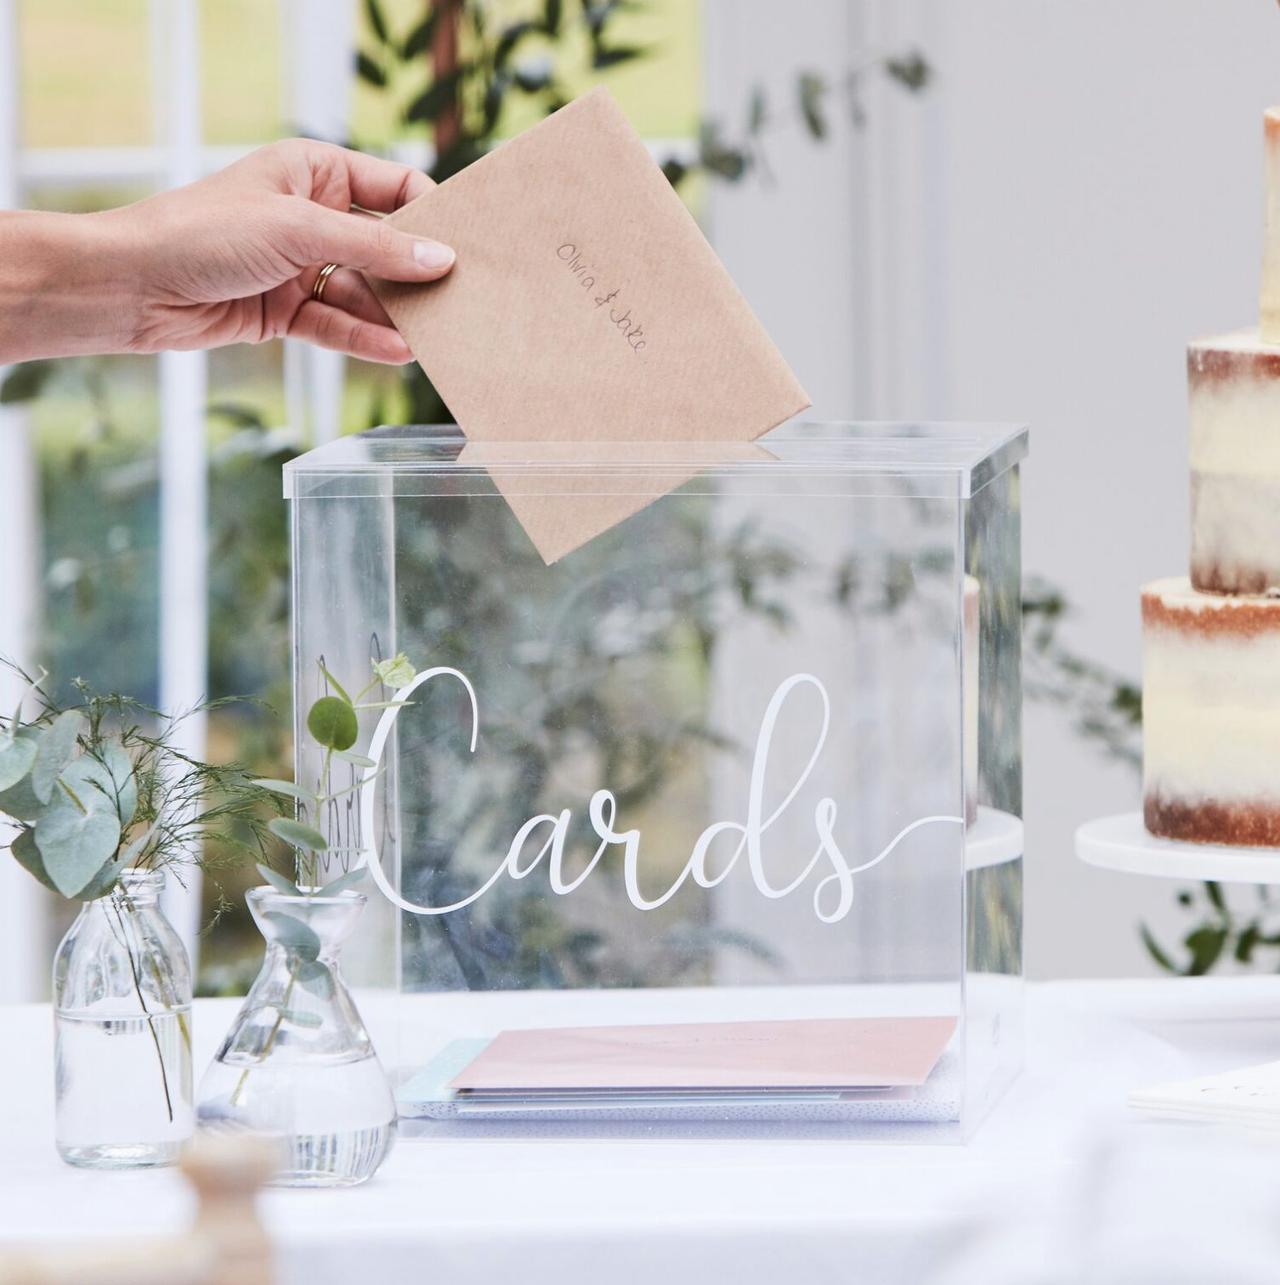 Wedding Card Box Personalized Wedding Card Box Fashion Transparent